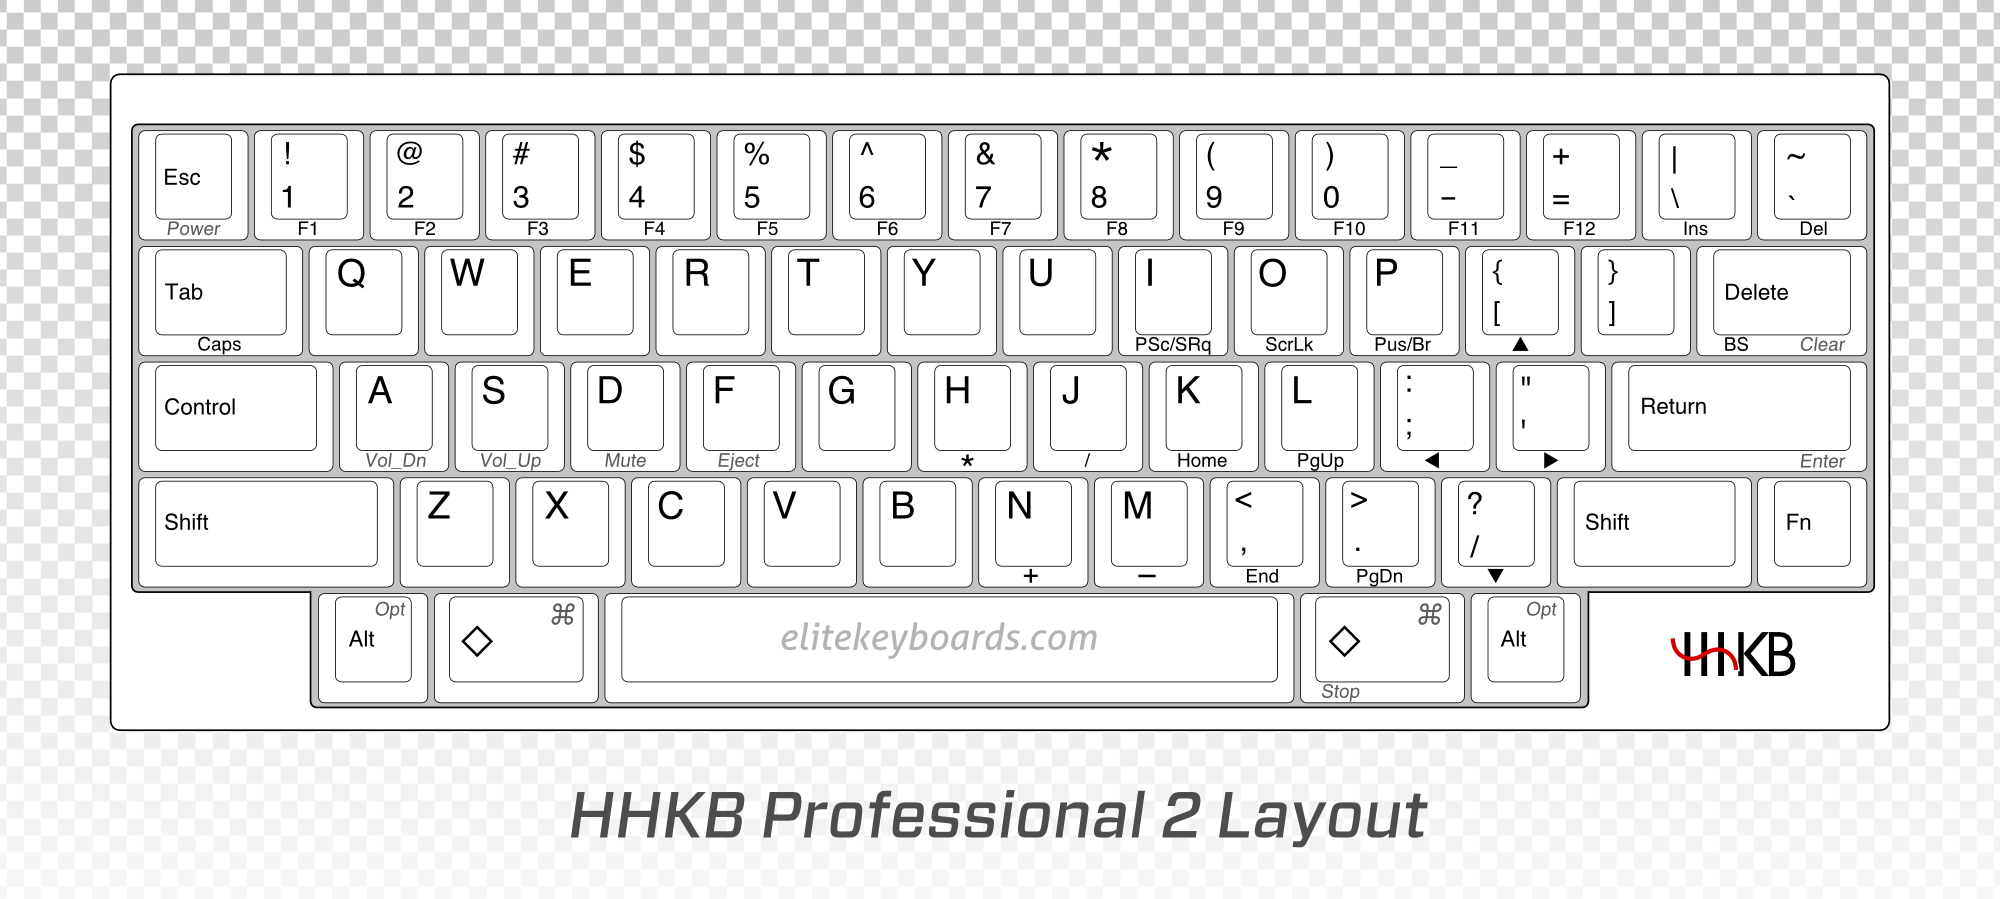 图 1: HHKB 键盘布局